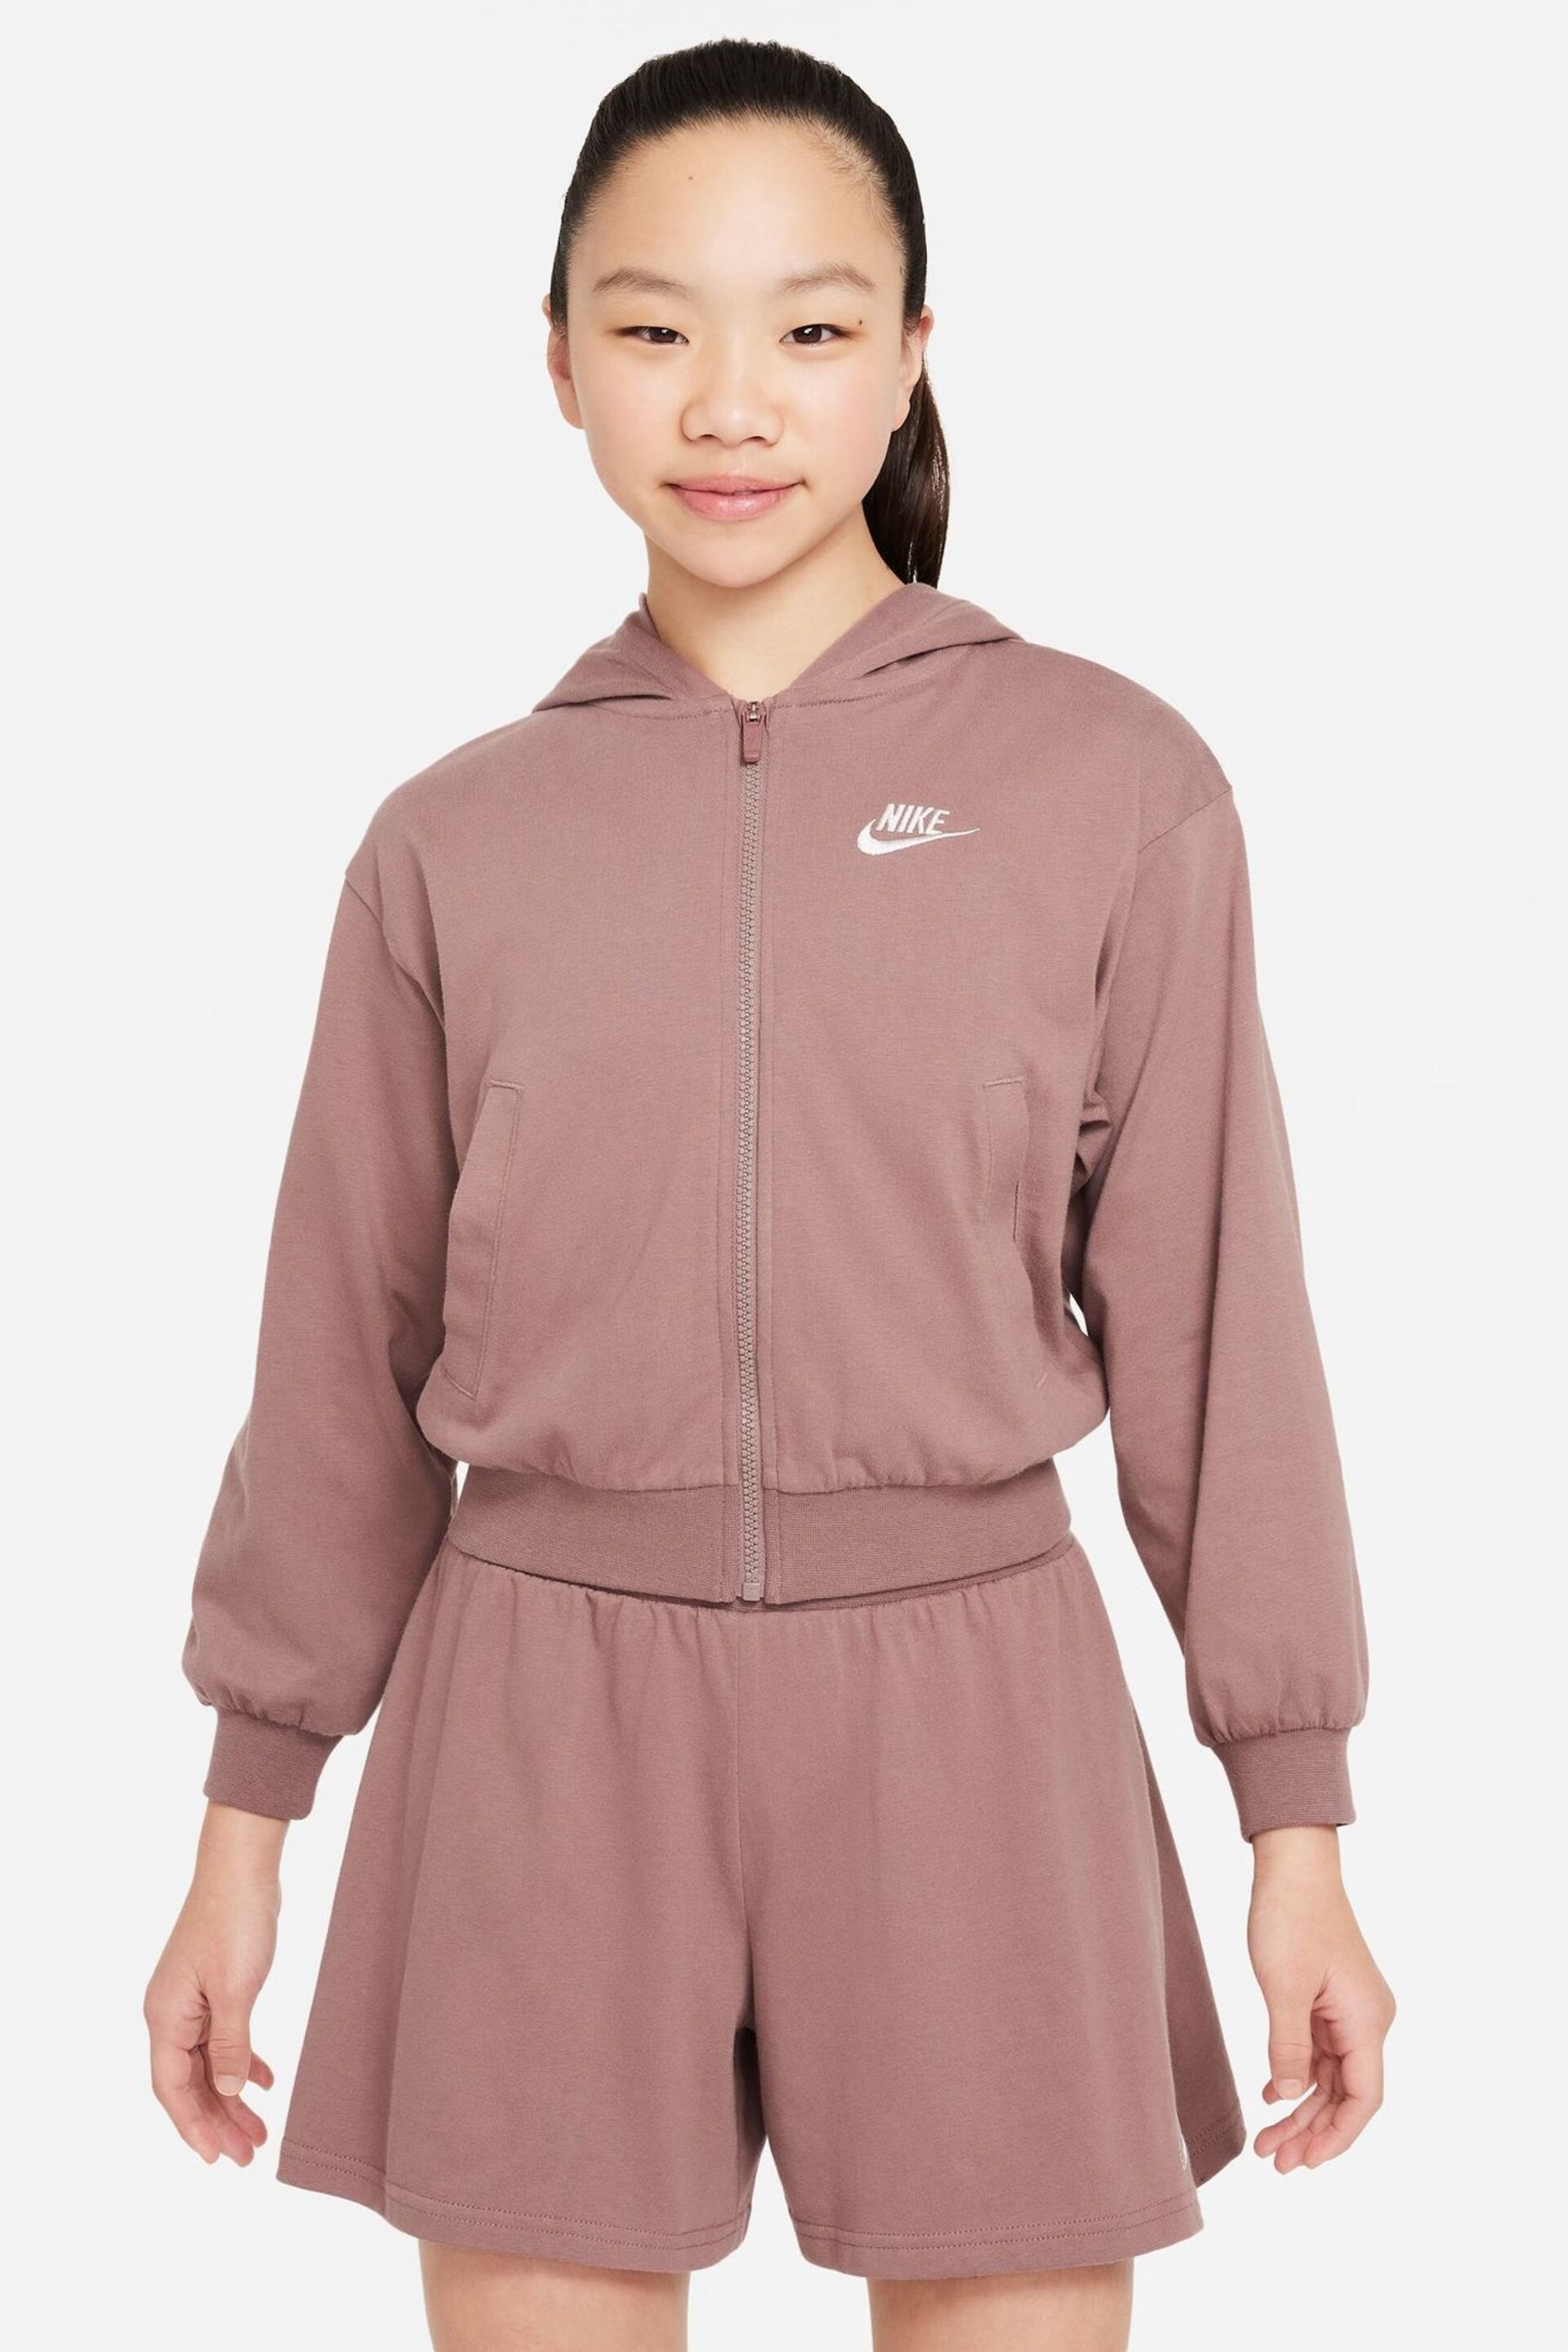 Nike Brown Sportswear Full Zip Jersey Hoodie - Image 1 of 5